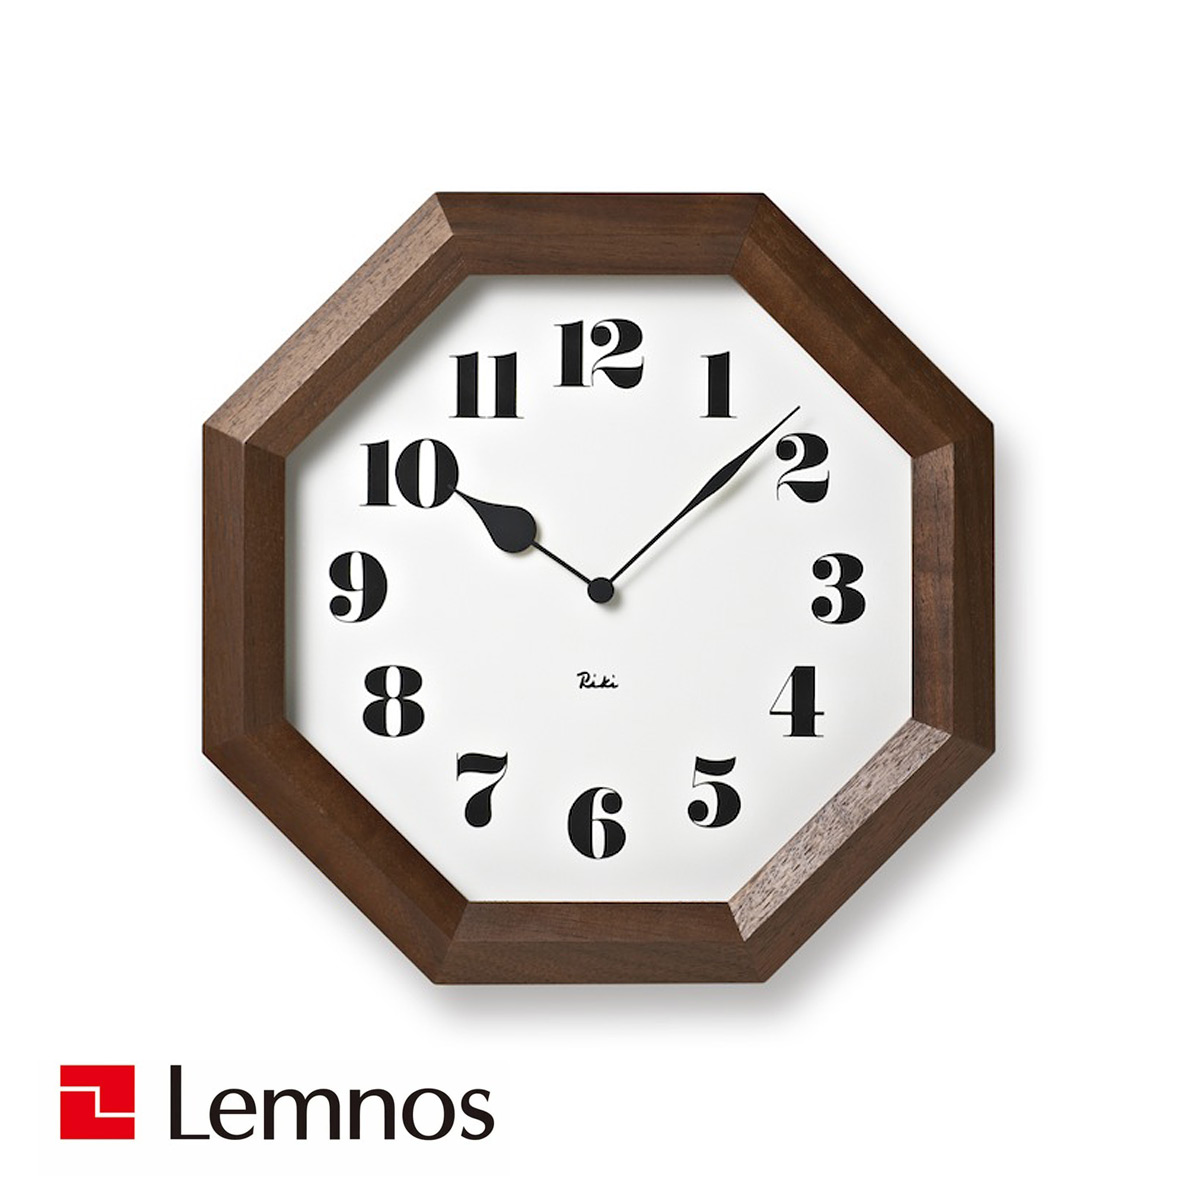 レムノス 掛け時計 木枠 ウォールナット ブラウン 八角の時計 WR11-01 Lemnos サイズ:w24.6×h24.6×d4.8cm